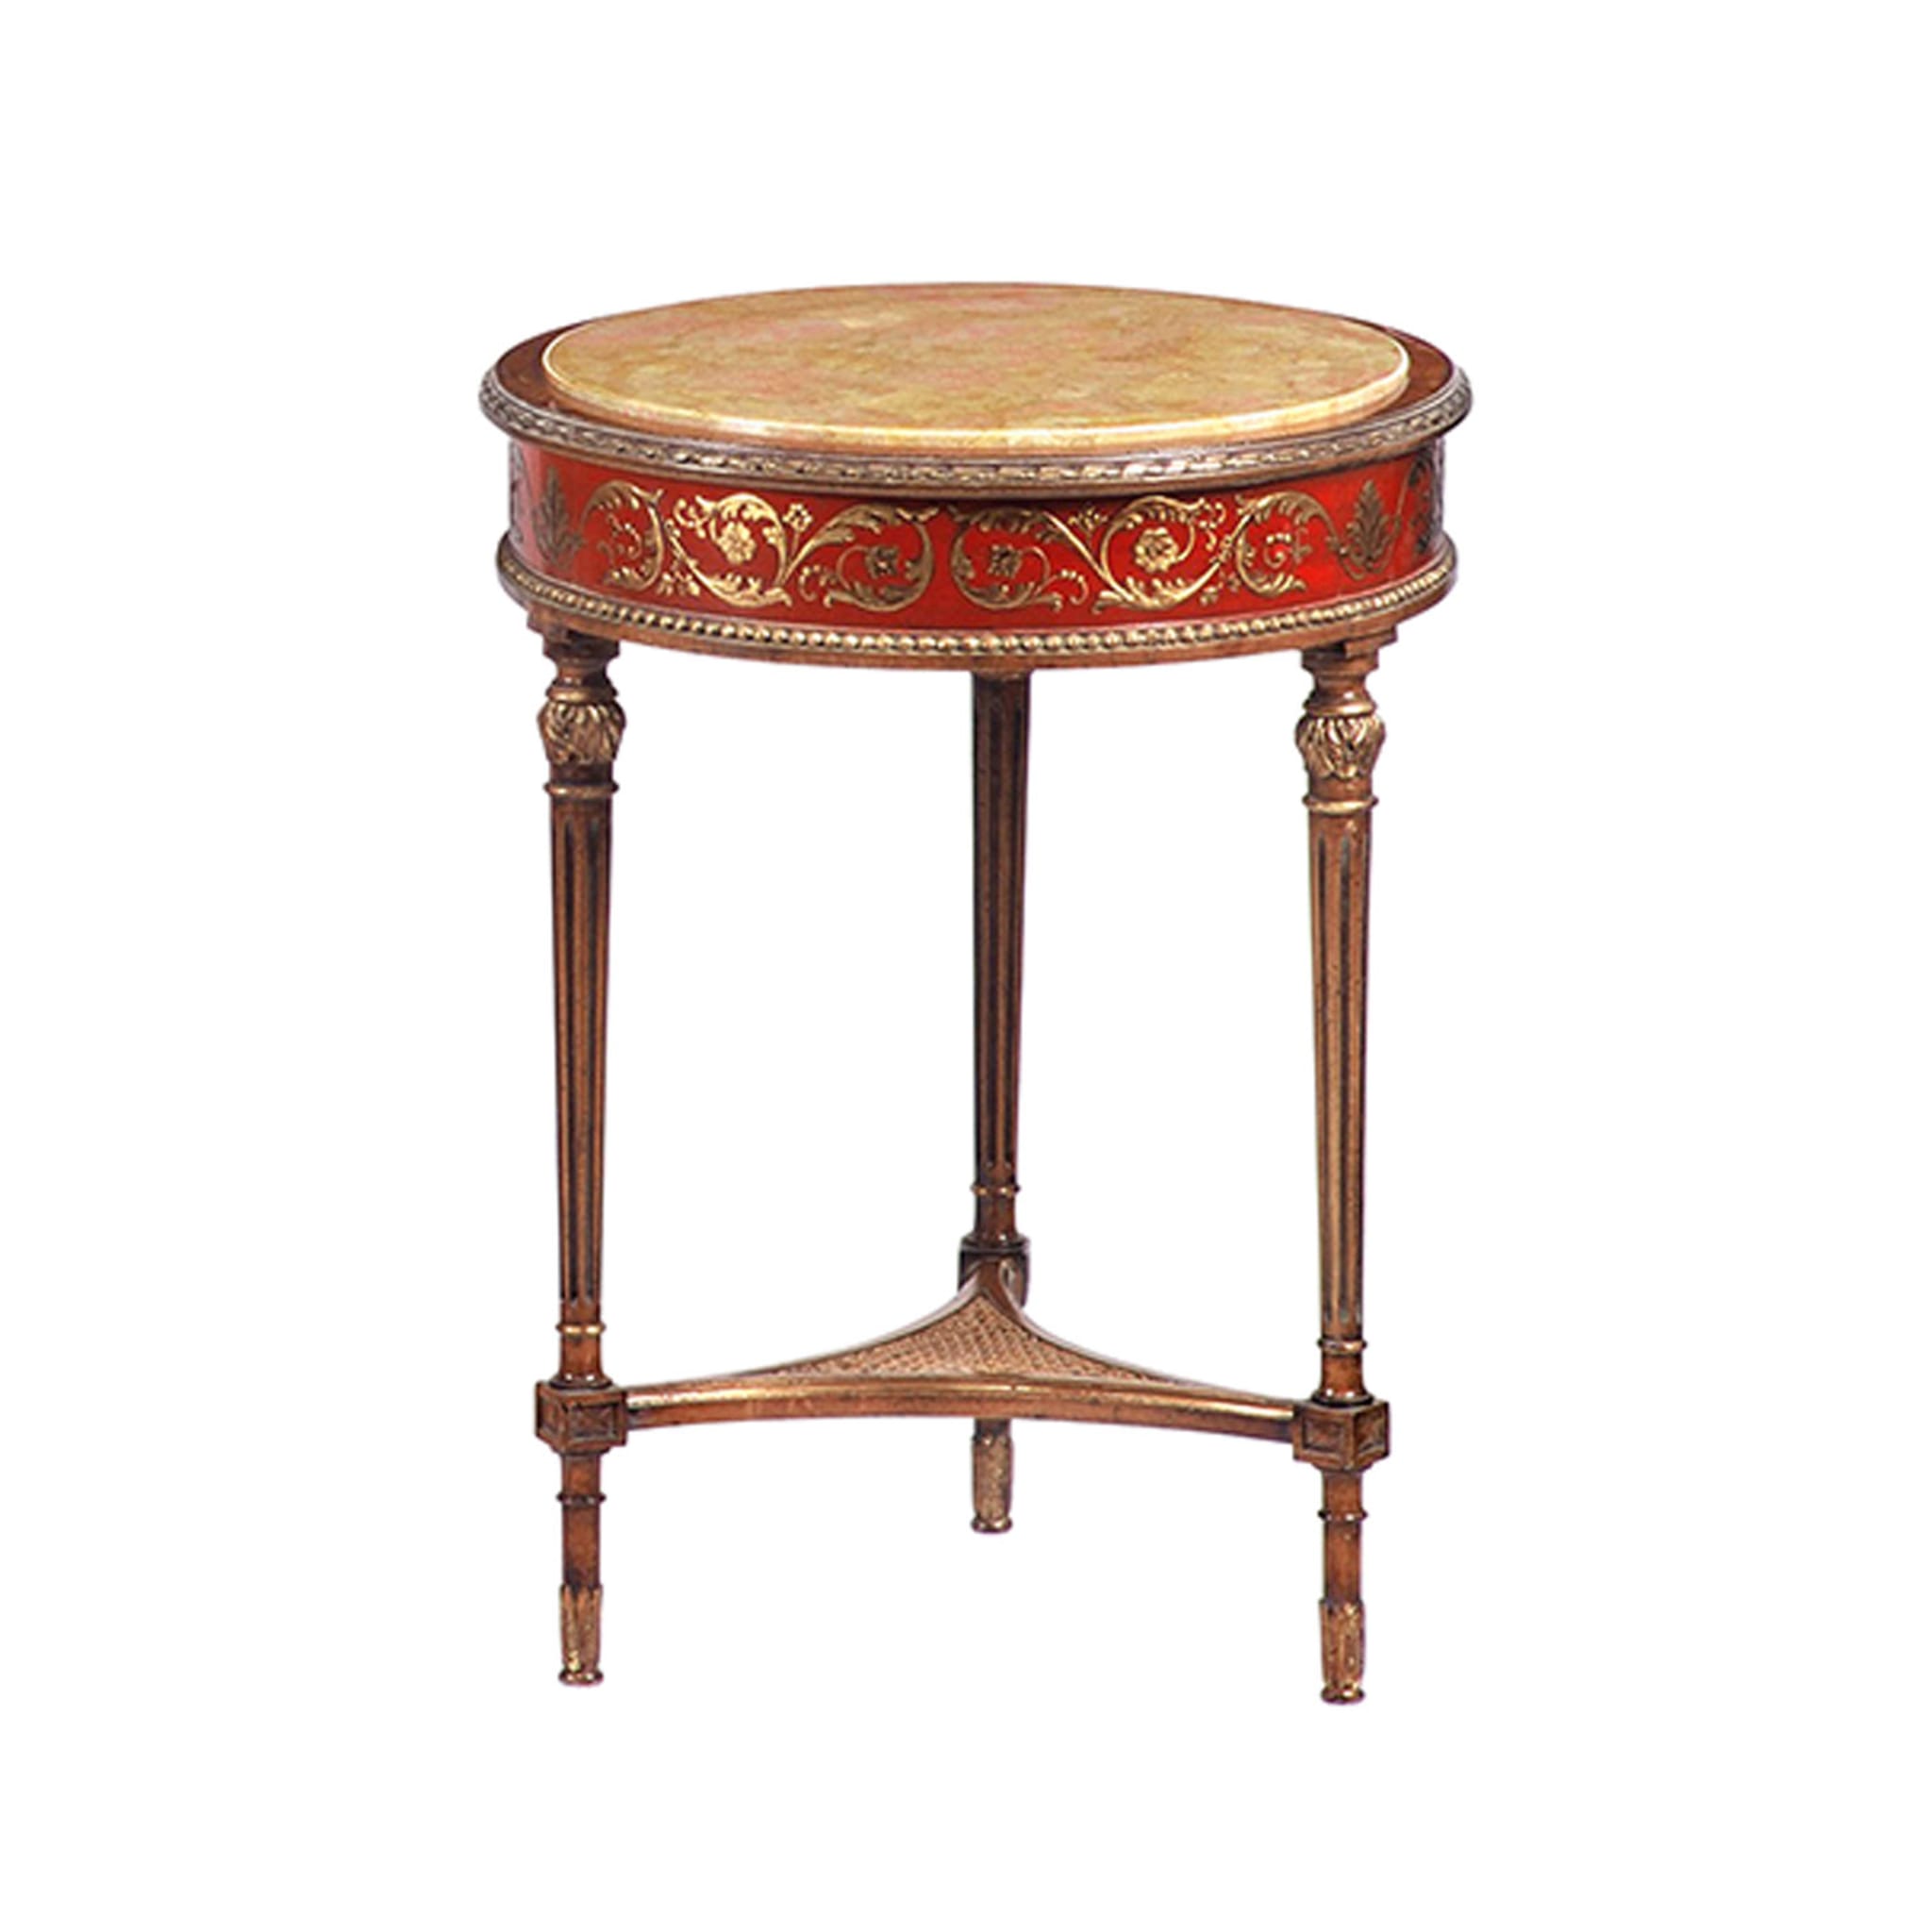 Table d'appoint rouge et or de style néoclassique français - Vue alternative 1